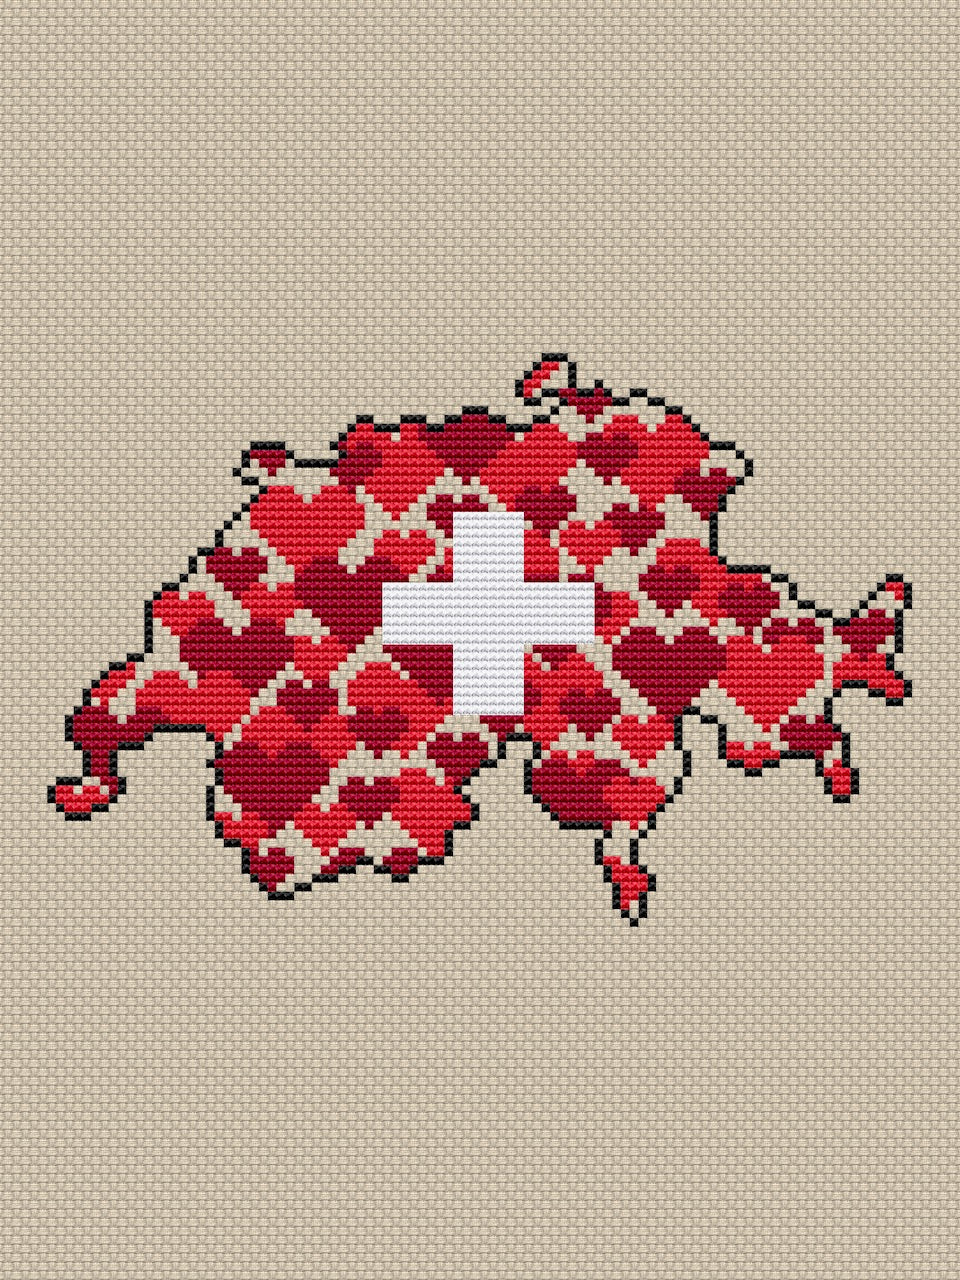 Switzerland cross stitch pattern-2